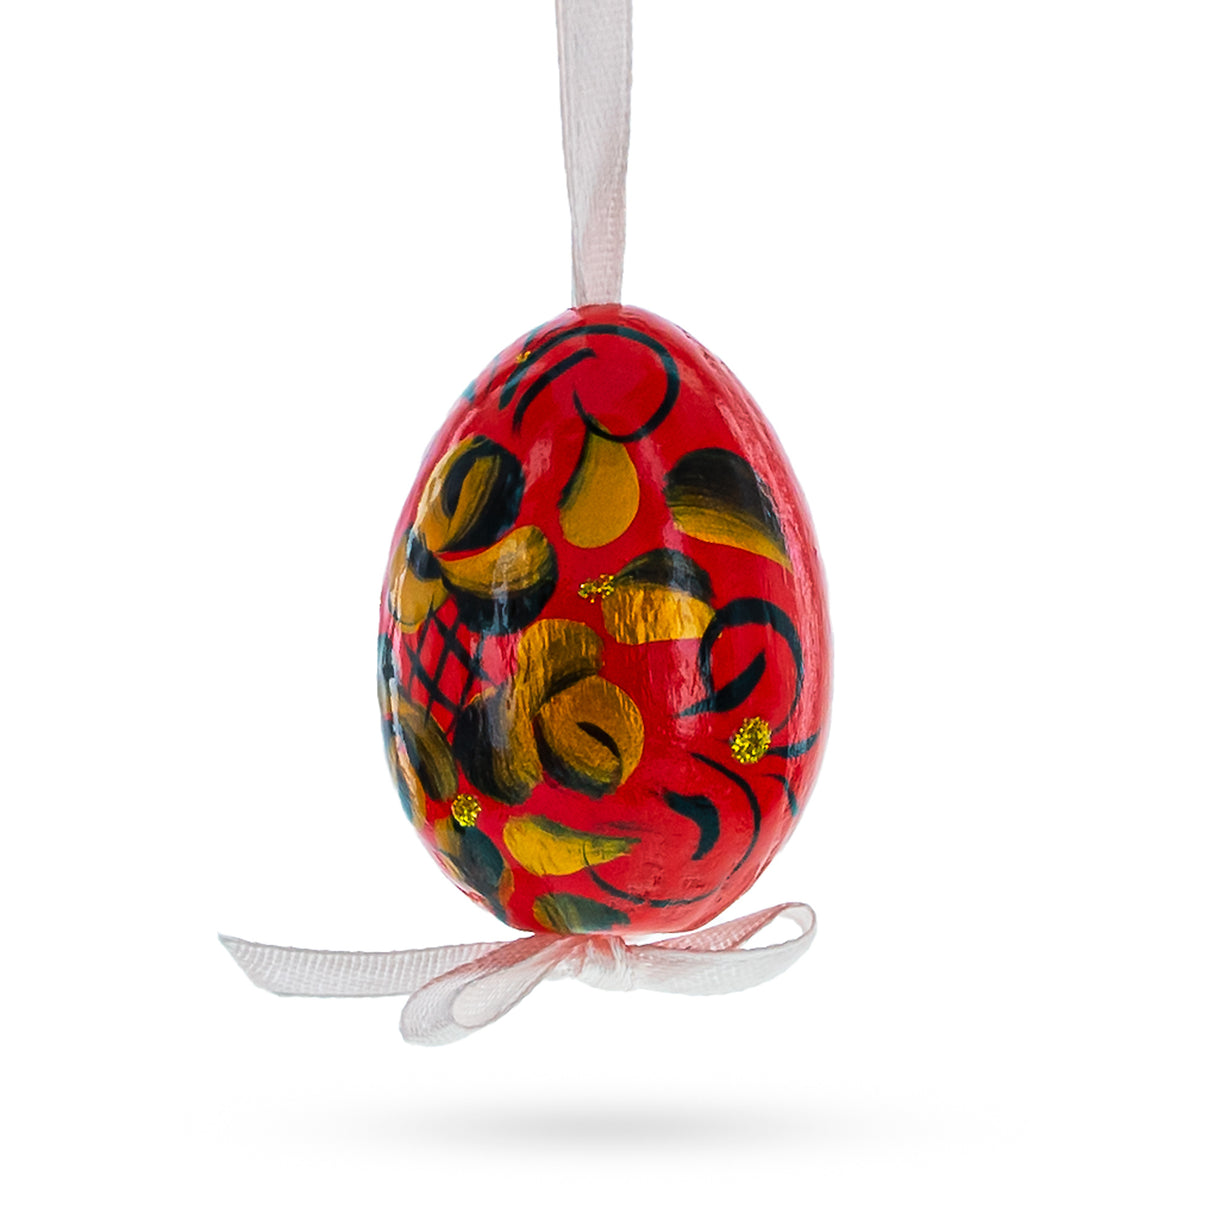 Adornos de huevos de Pascua de madera multicolores en miniatura con pintura florida